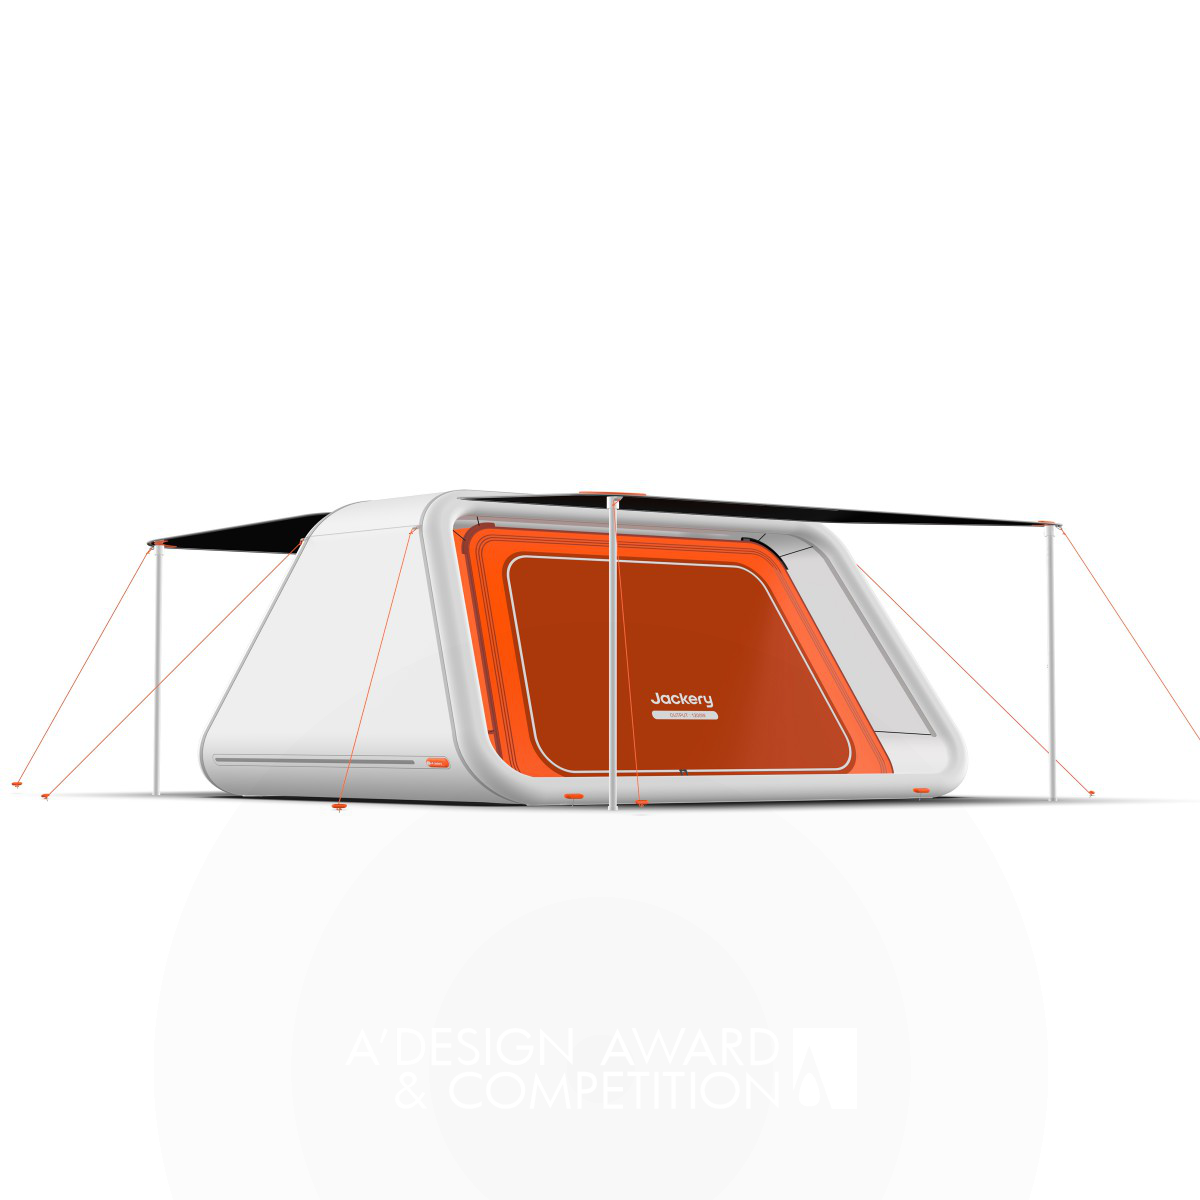 Wei Bai, Jiajin He ve Xiaowei Yin'in "Light Tent Air" Tasarımı: Yeşil Enerji ve Taşınabilirlik Buluştu